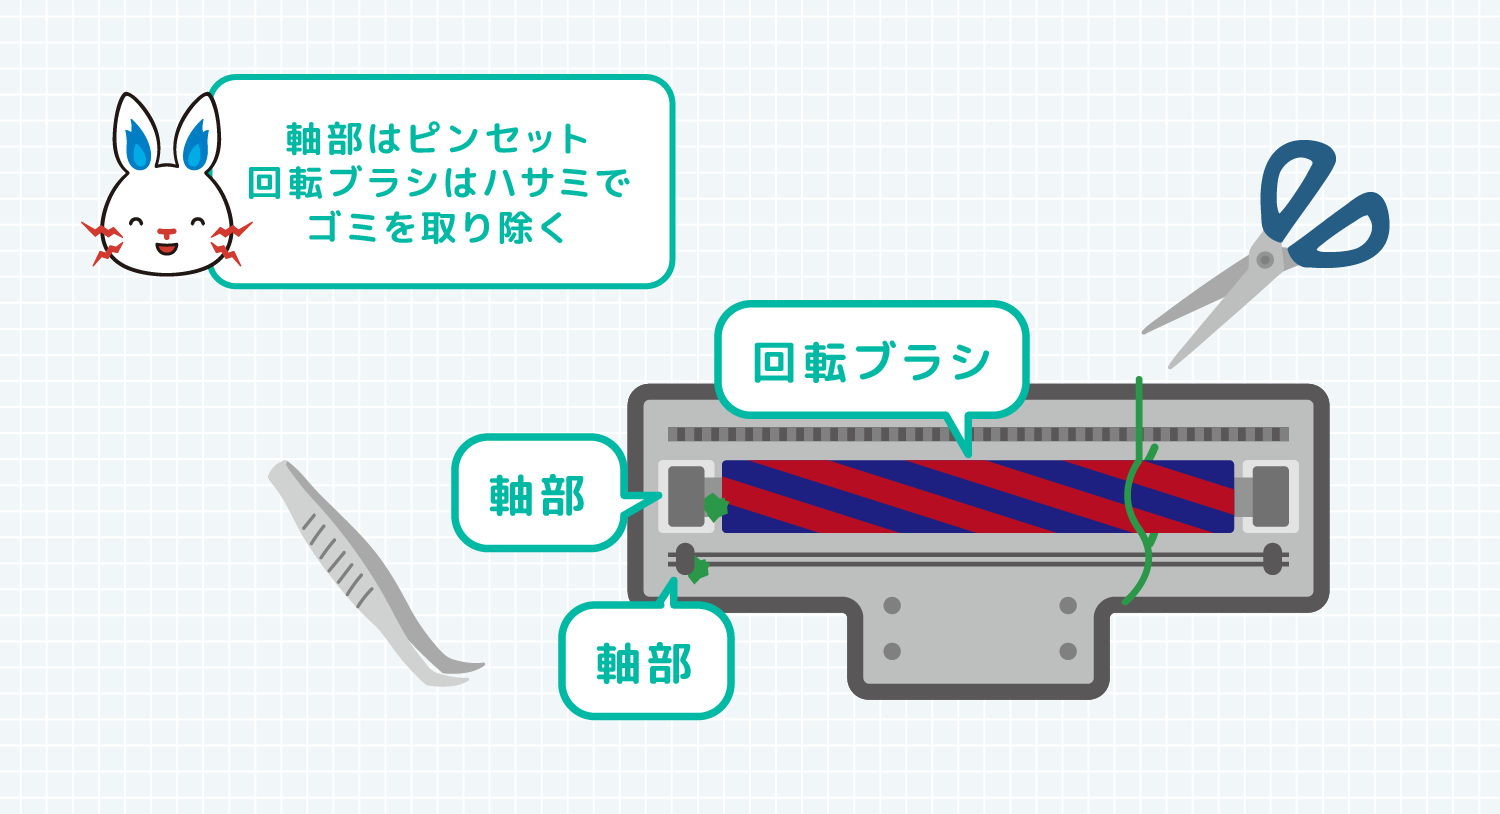 軸部はピンセット 回転ブラシはハサミで ゴミを取り除く 軸部と回転ブラシの説明図